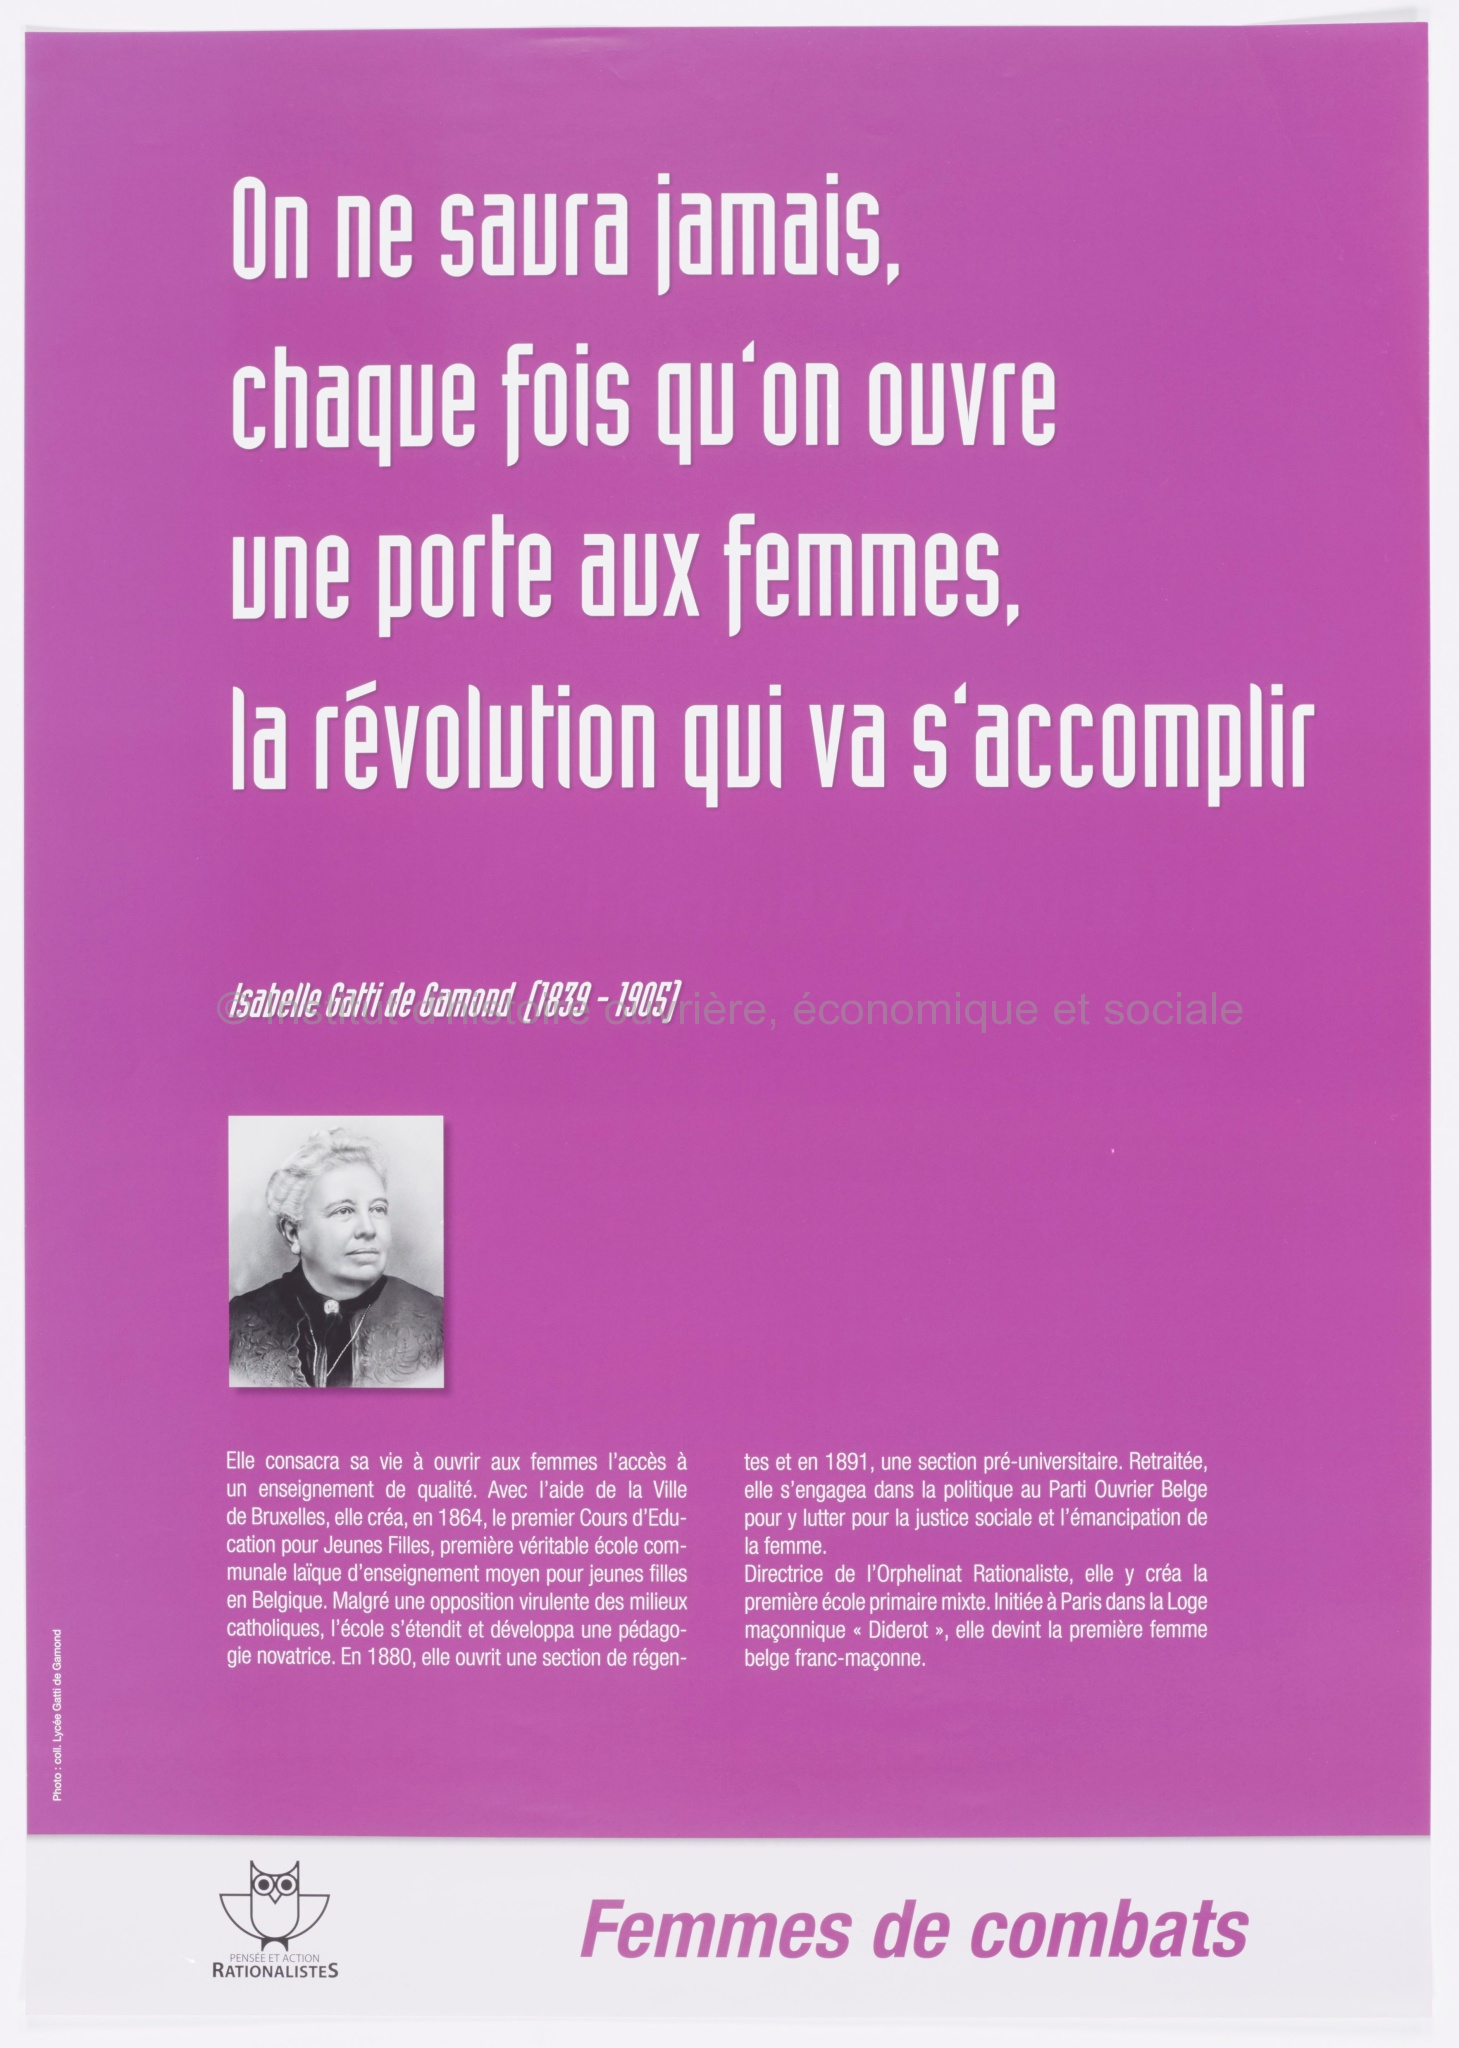 On ne saura jamais, chaque fois qu'on ouvre une porte aux femmes, la révolution qui va s'accomplir : Isabelle Gatti de Gamond